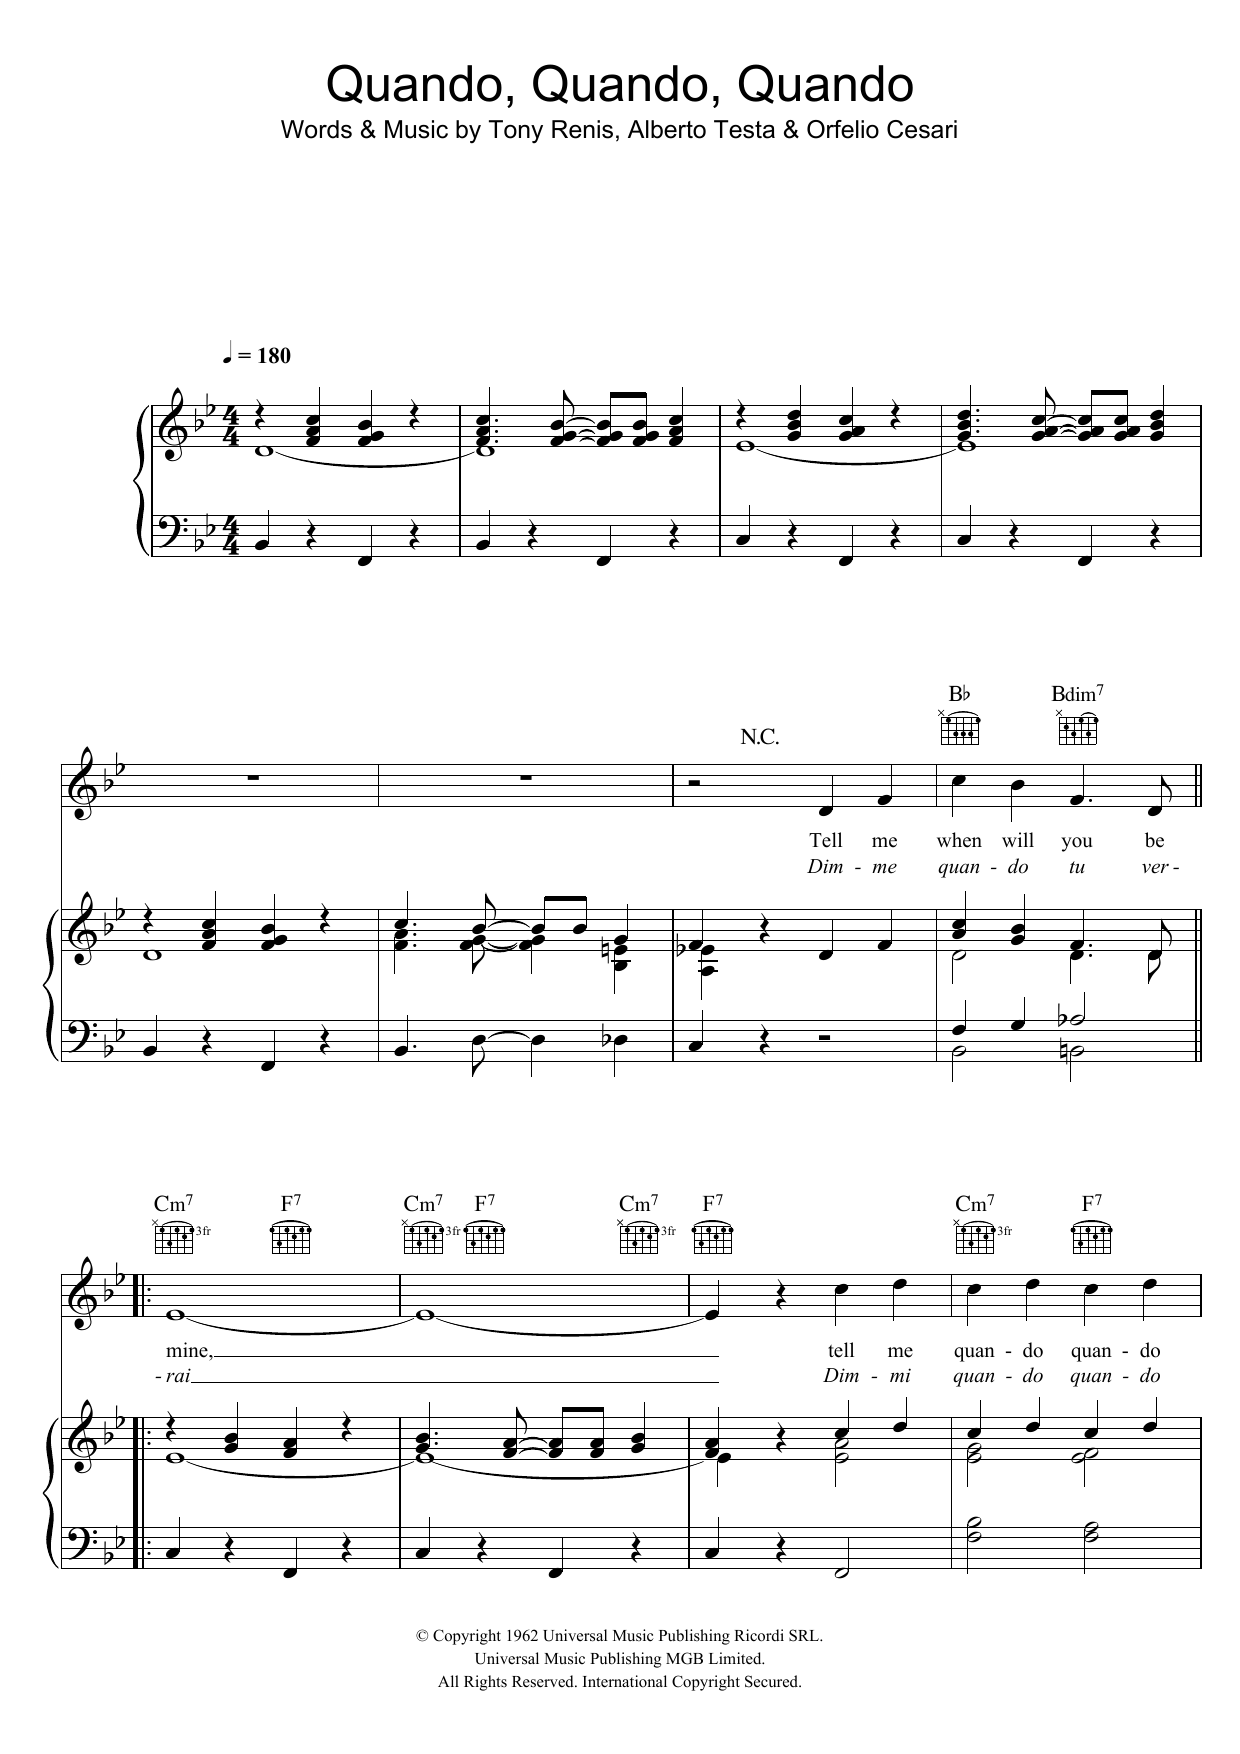 Engelbert Humperdinck Quando, Quando, Quando Sheet Music Notes & Chords for Piano, Vocal & Guitar (Right-Hand Melody) - Download or Print PDF